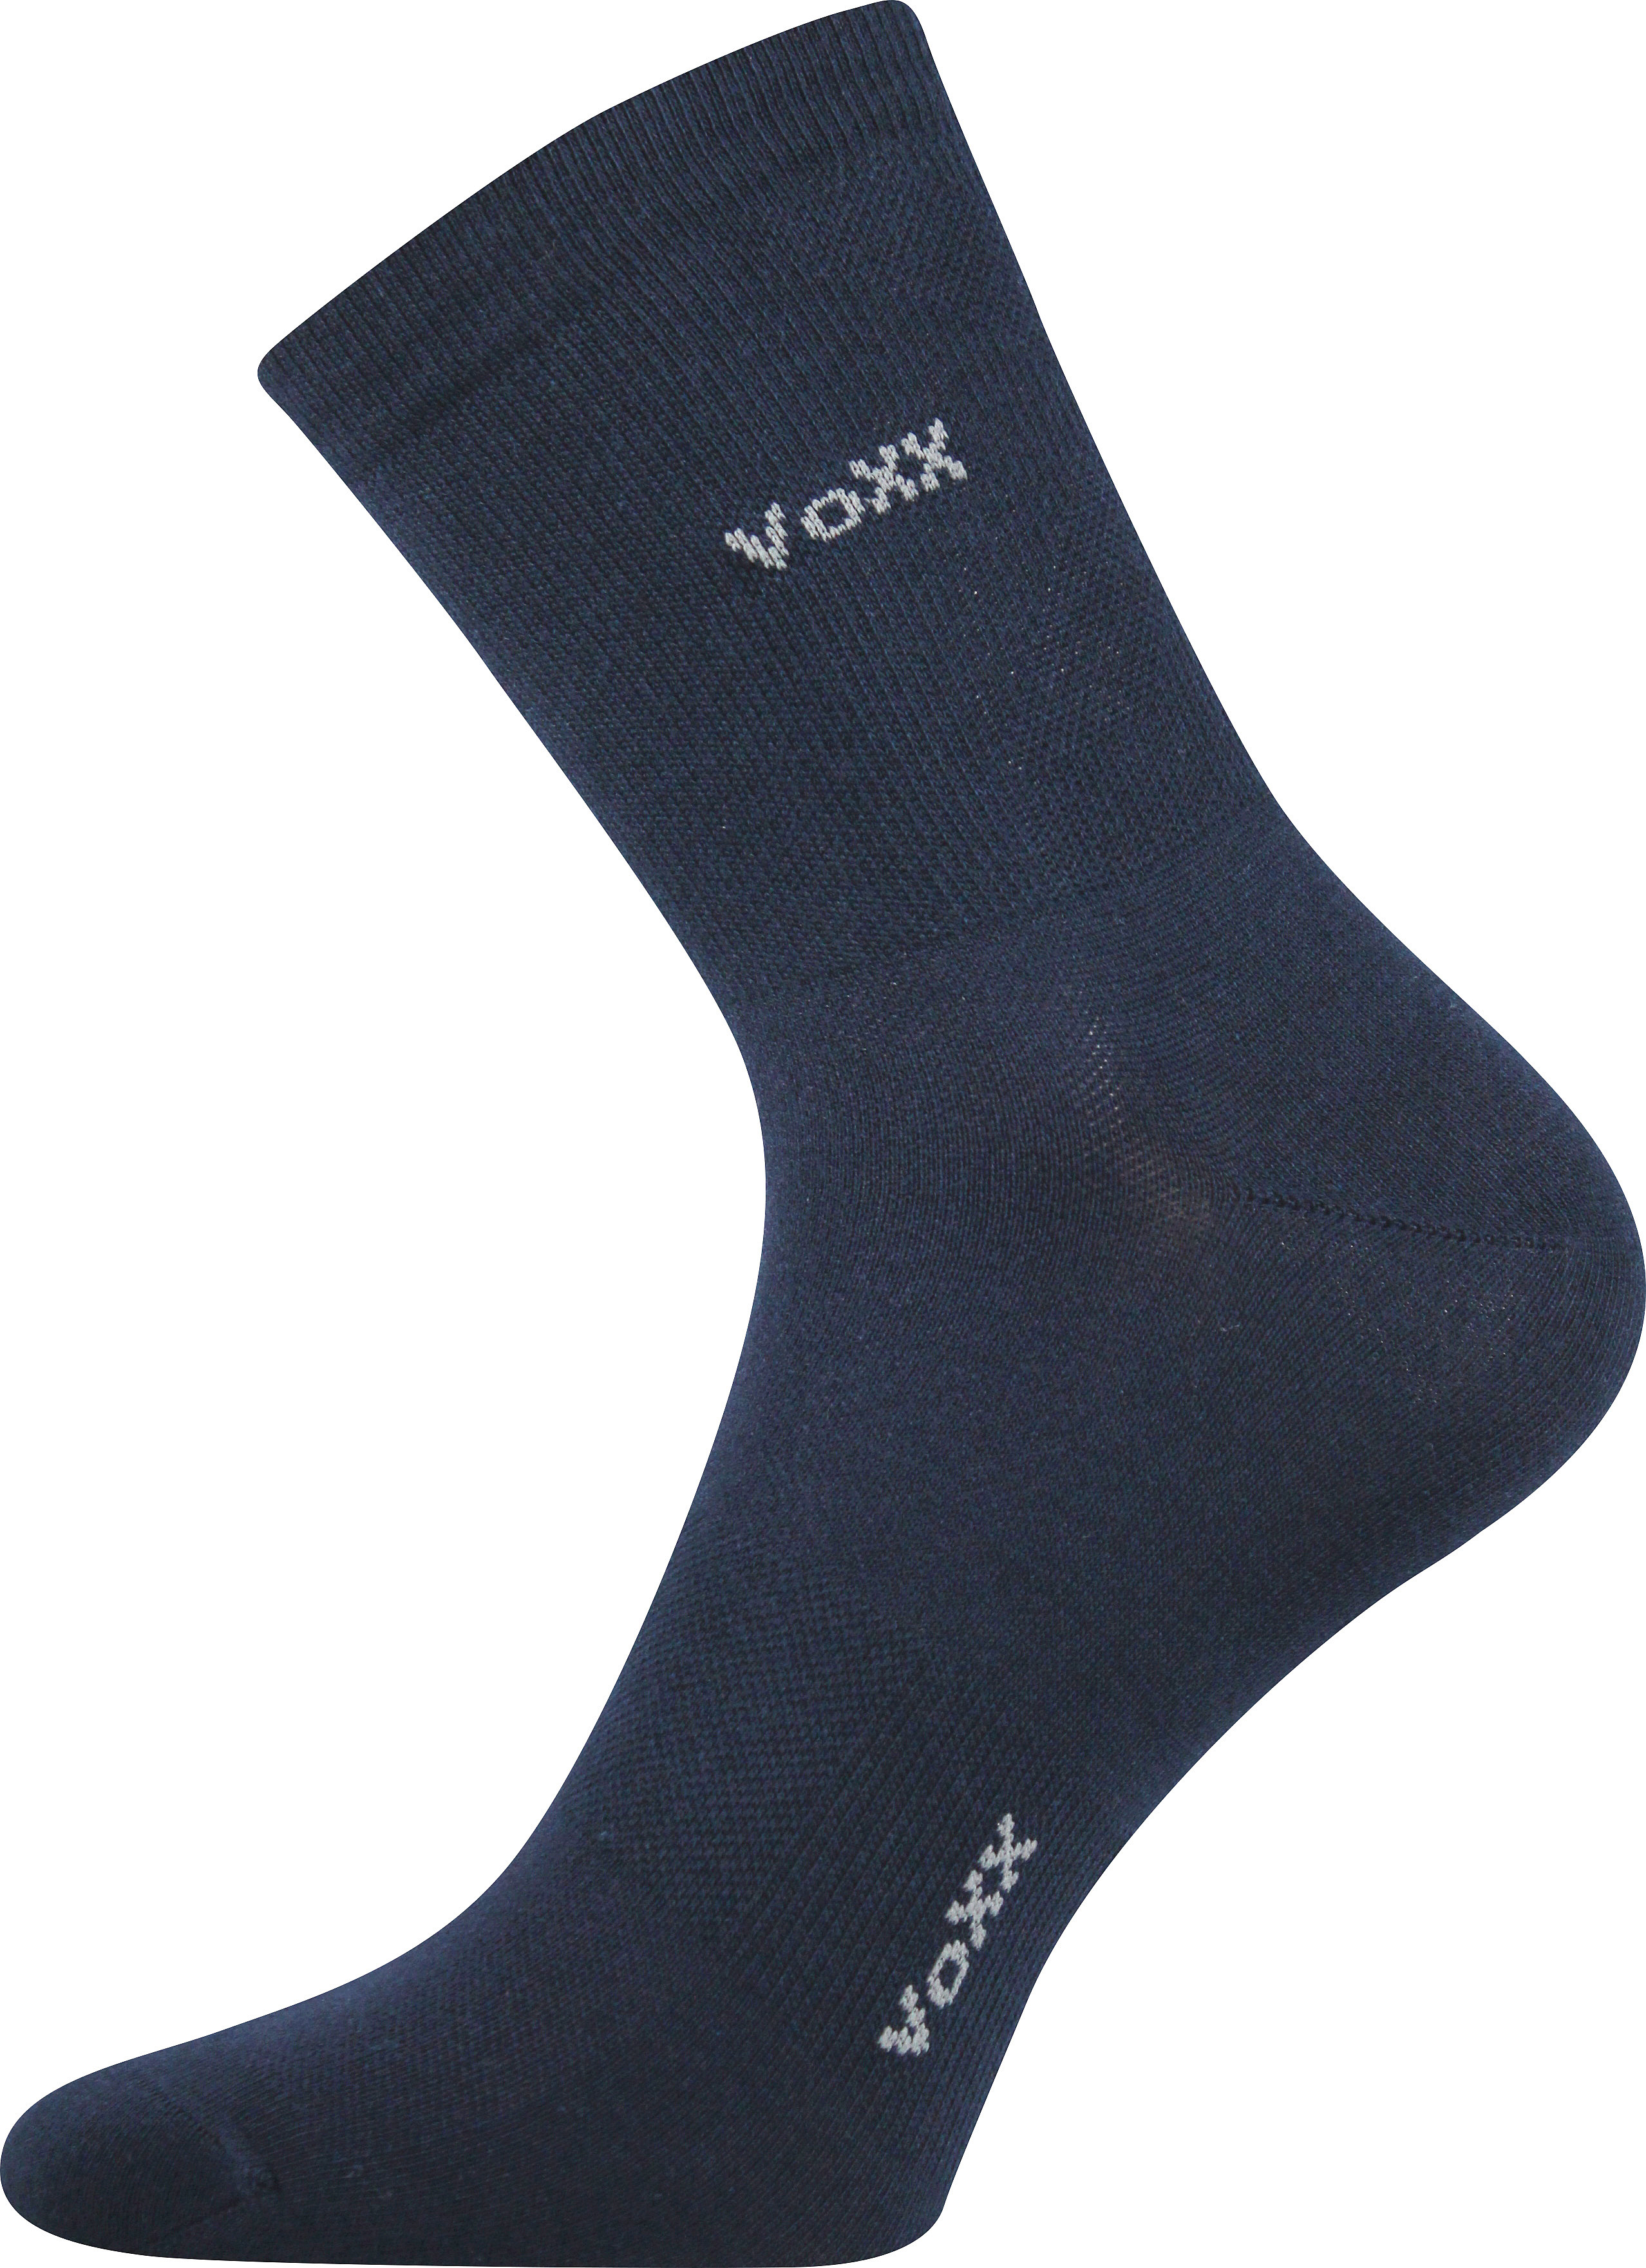 Ponožky sportovní Voxx Horizon - navy, 35-38